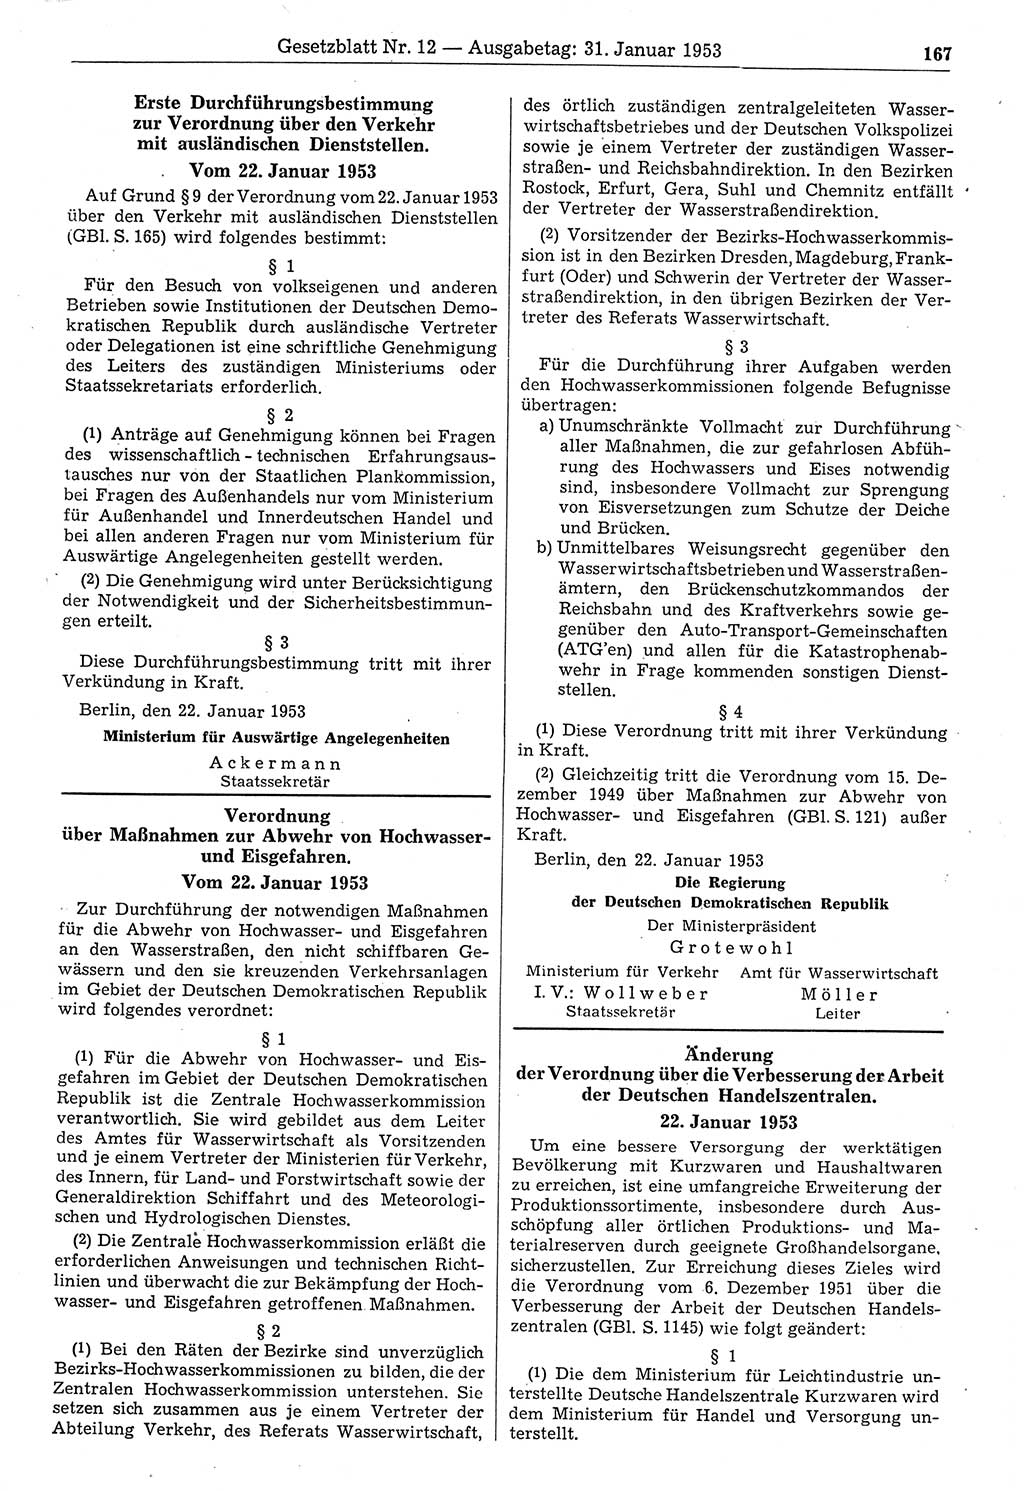 Gesetzblatt (GBl.) der Deutschen Demokratischen Republik (DDR) 1953, Seite 167 (GBl. DDR 1953, S. 167)